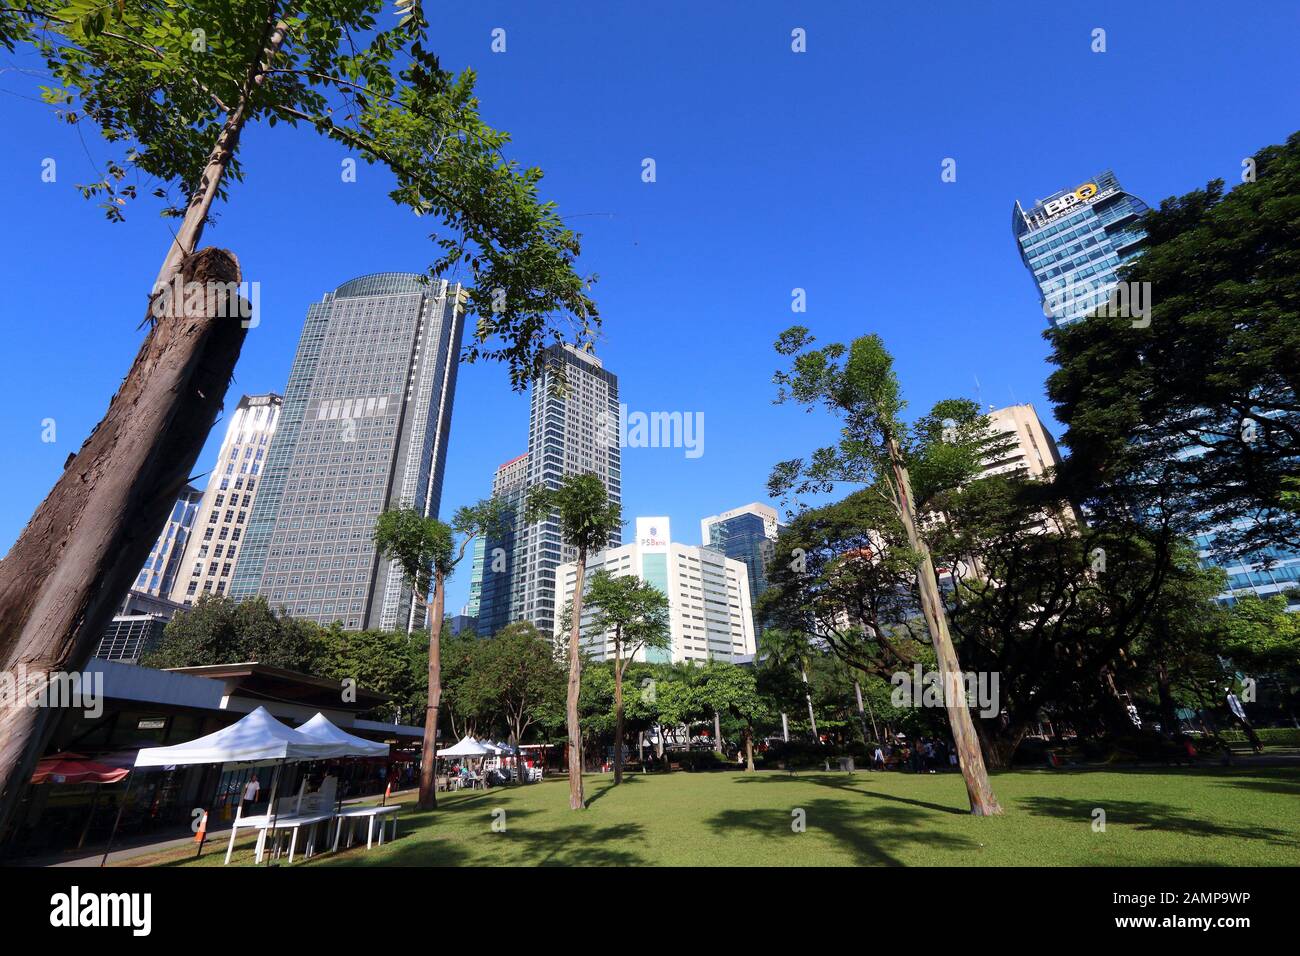 Manille, PHILIPPINES - 28 NOVEMBRE 2017 : vue sur les gratte-ciel depuis le triangle d'Ayala dans la ville de Makati, métro Manille, Philippines. Le métro Manille est l'un des biges Banque D'Images